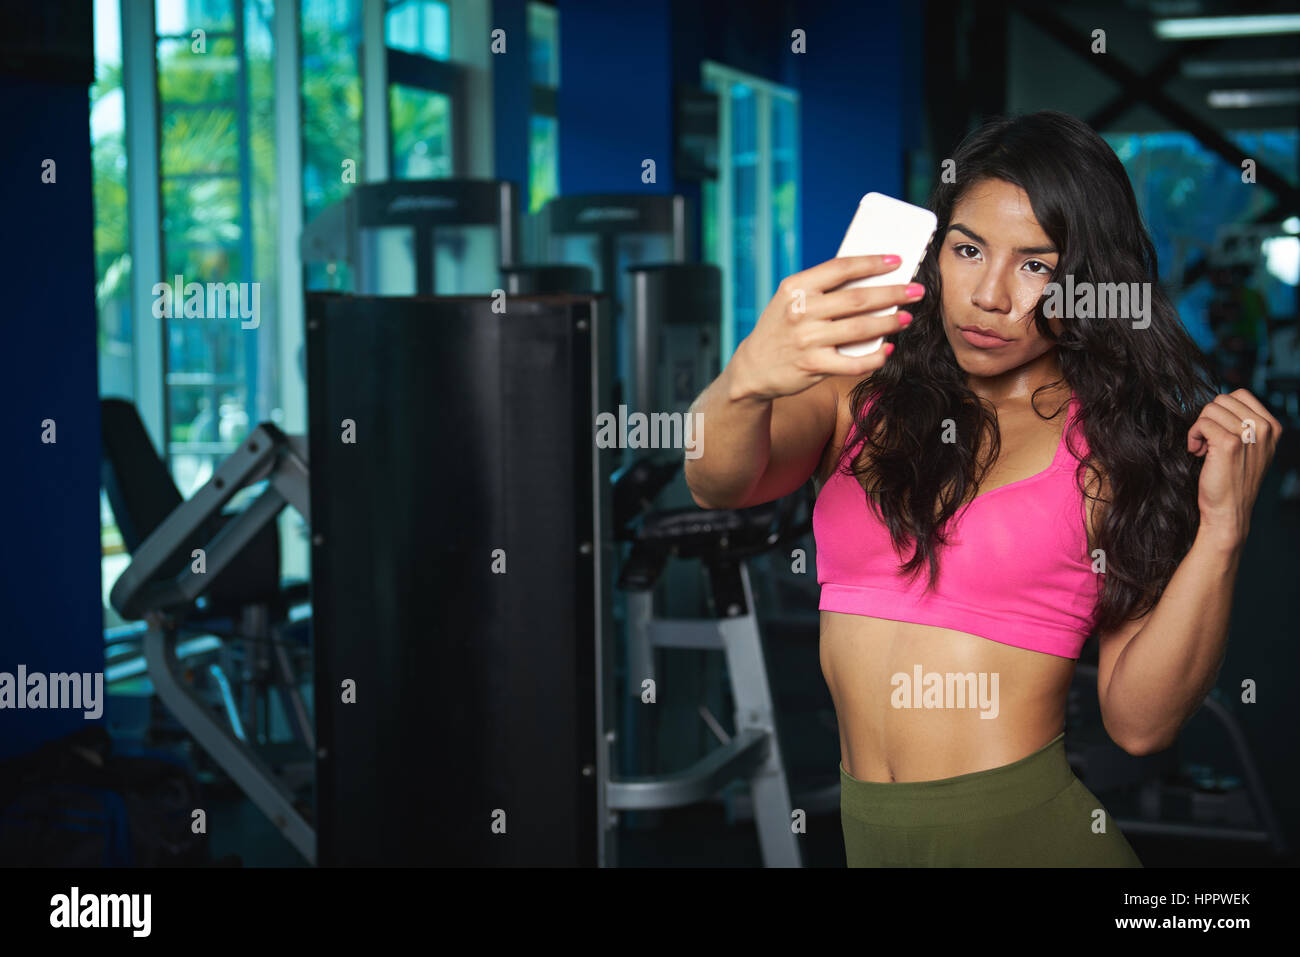 Sport donna prendendo selfie davanti a uno specchio in palestra